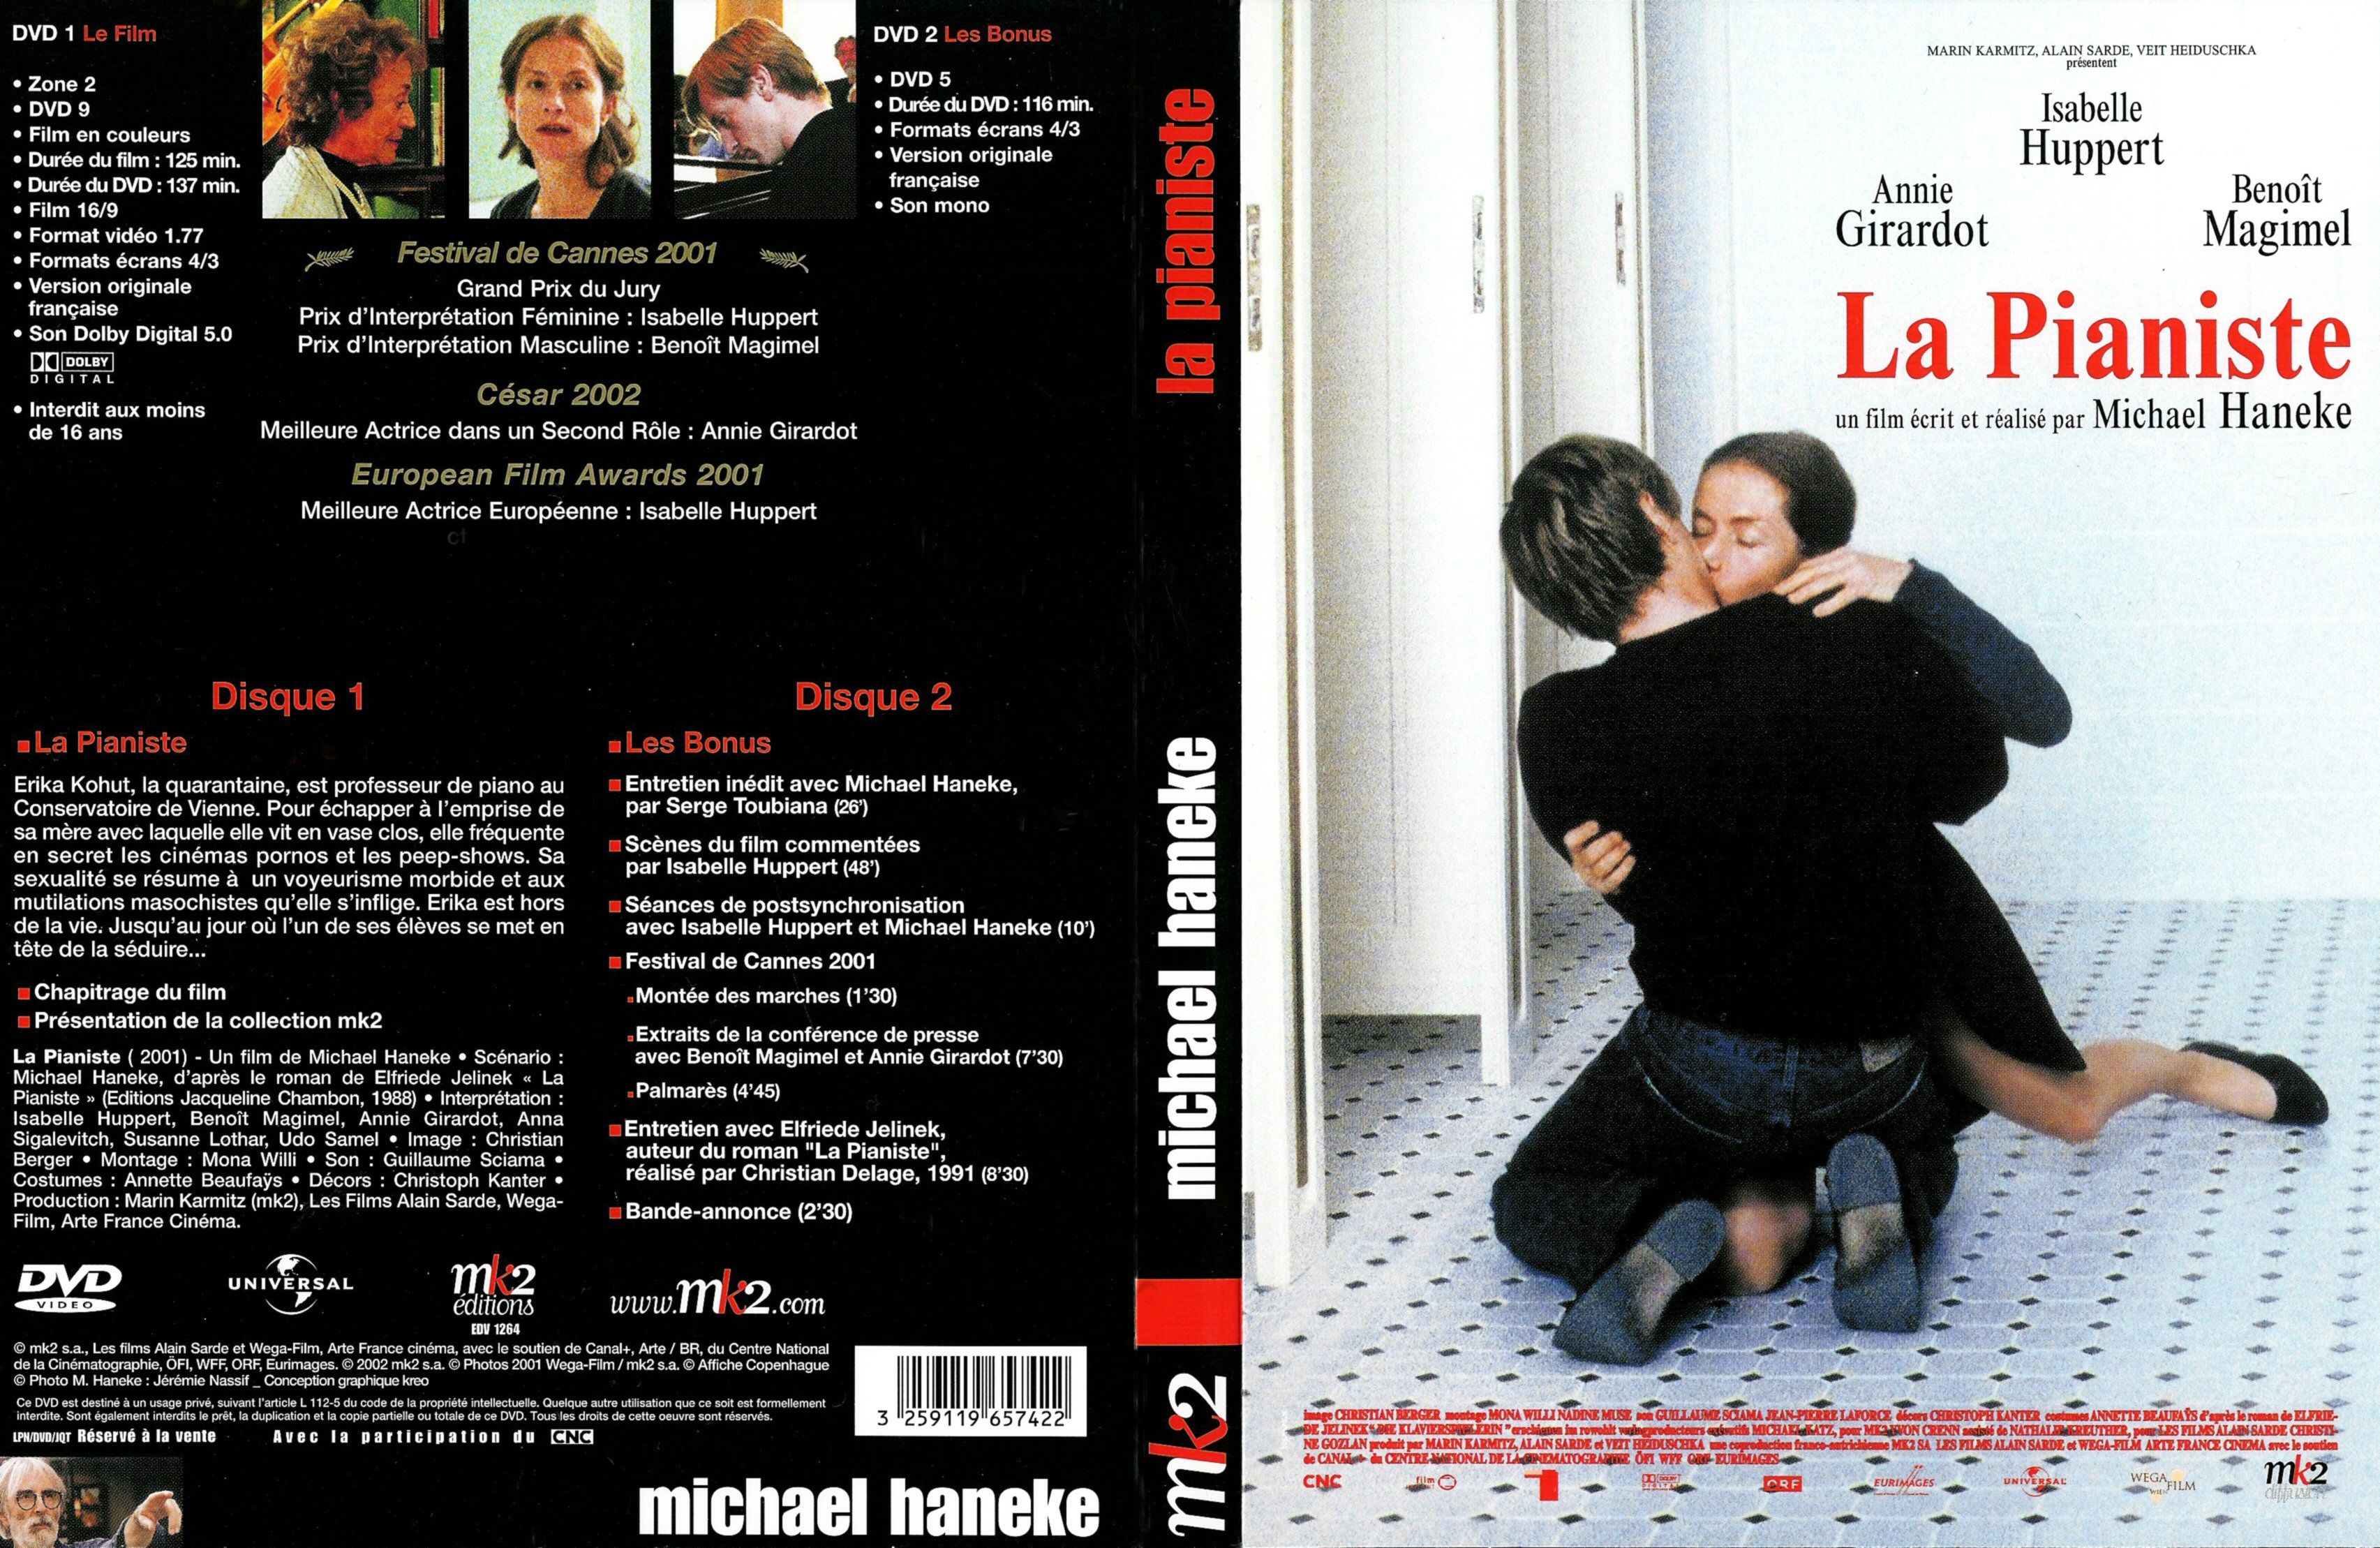 Jaquette DVD La pianiste